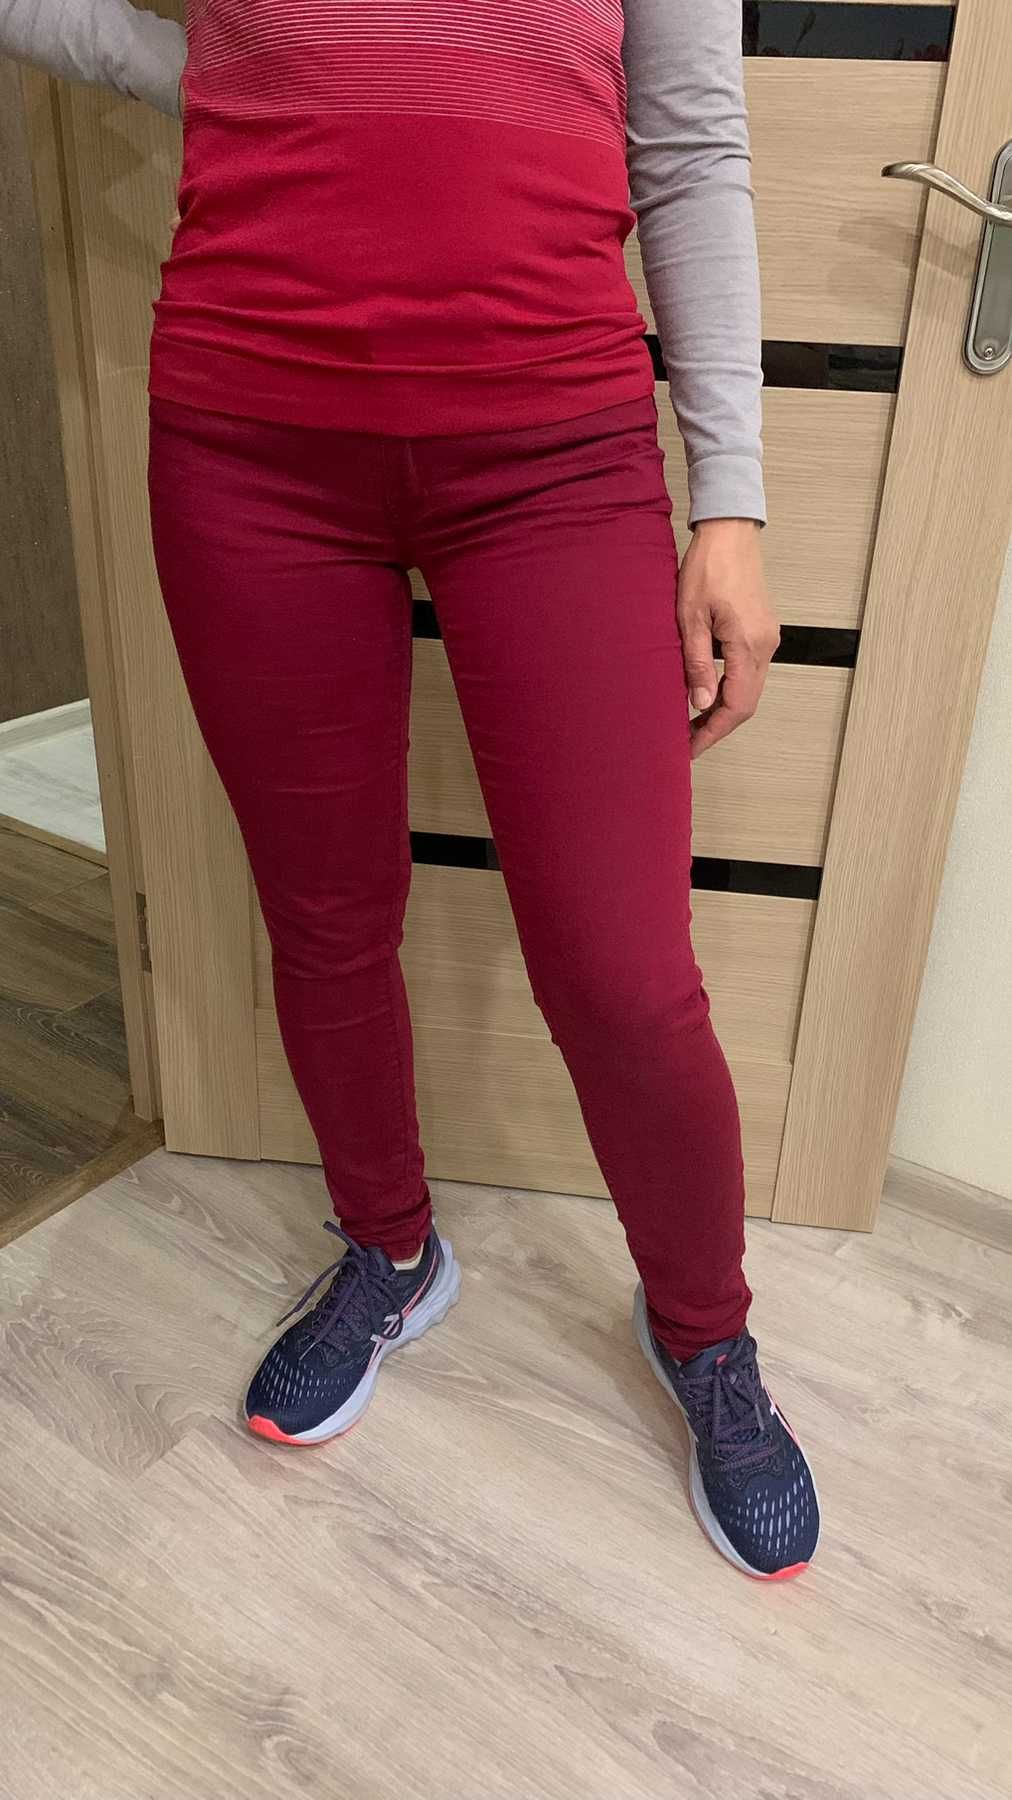 Продам женские джинсы скинни размер S